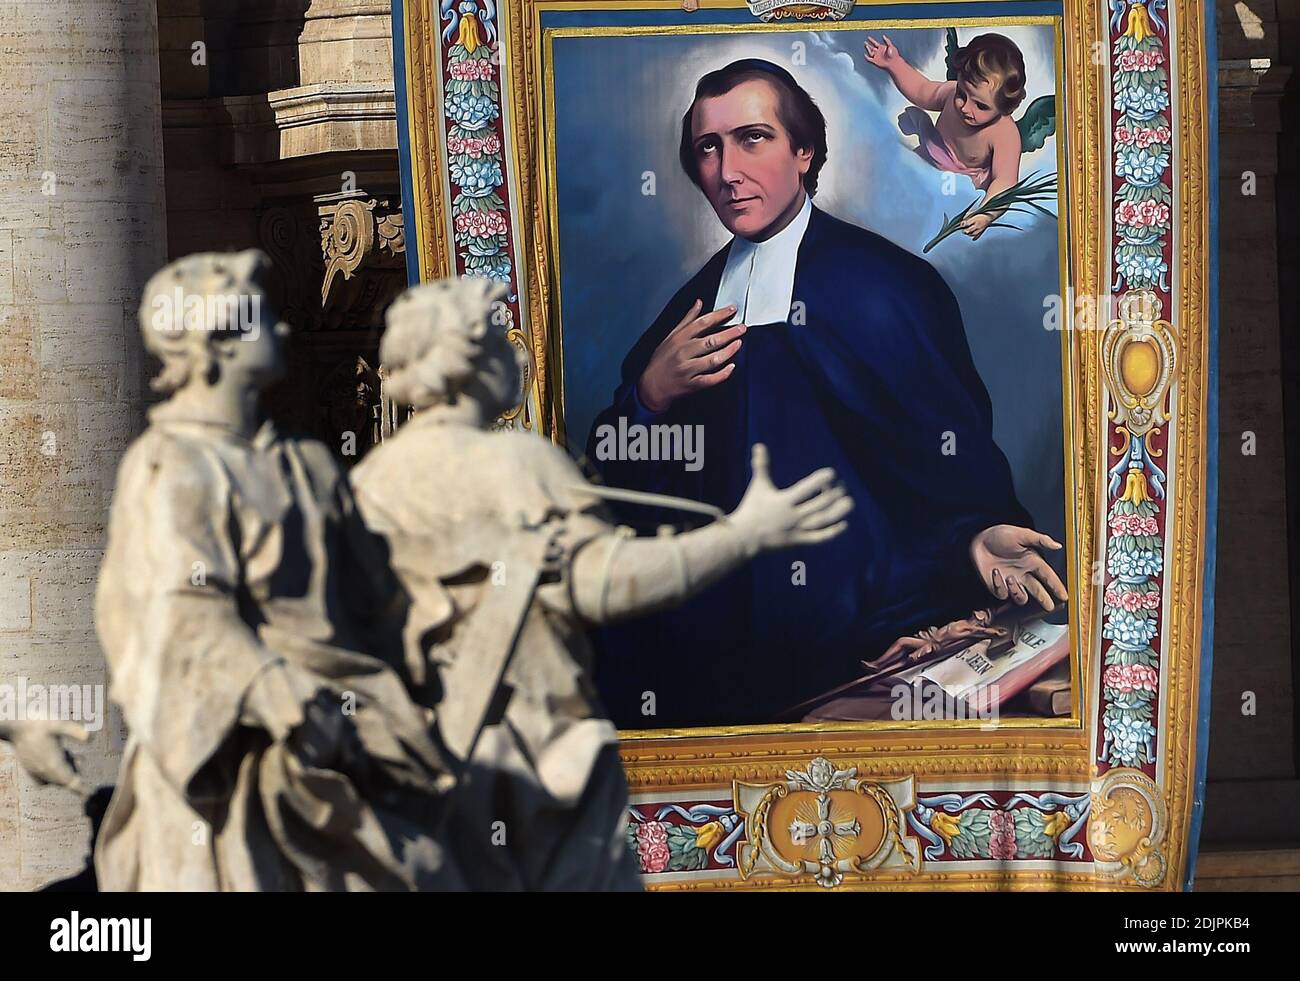 Un tapiz colgado en la fachada de la basílica de San Pedro muestra un  retrato del francés Salomon Leclercq durante una misa de canonización  dirigida por el Papa Francisco el 16 de